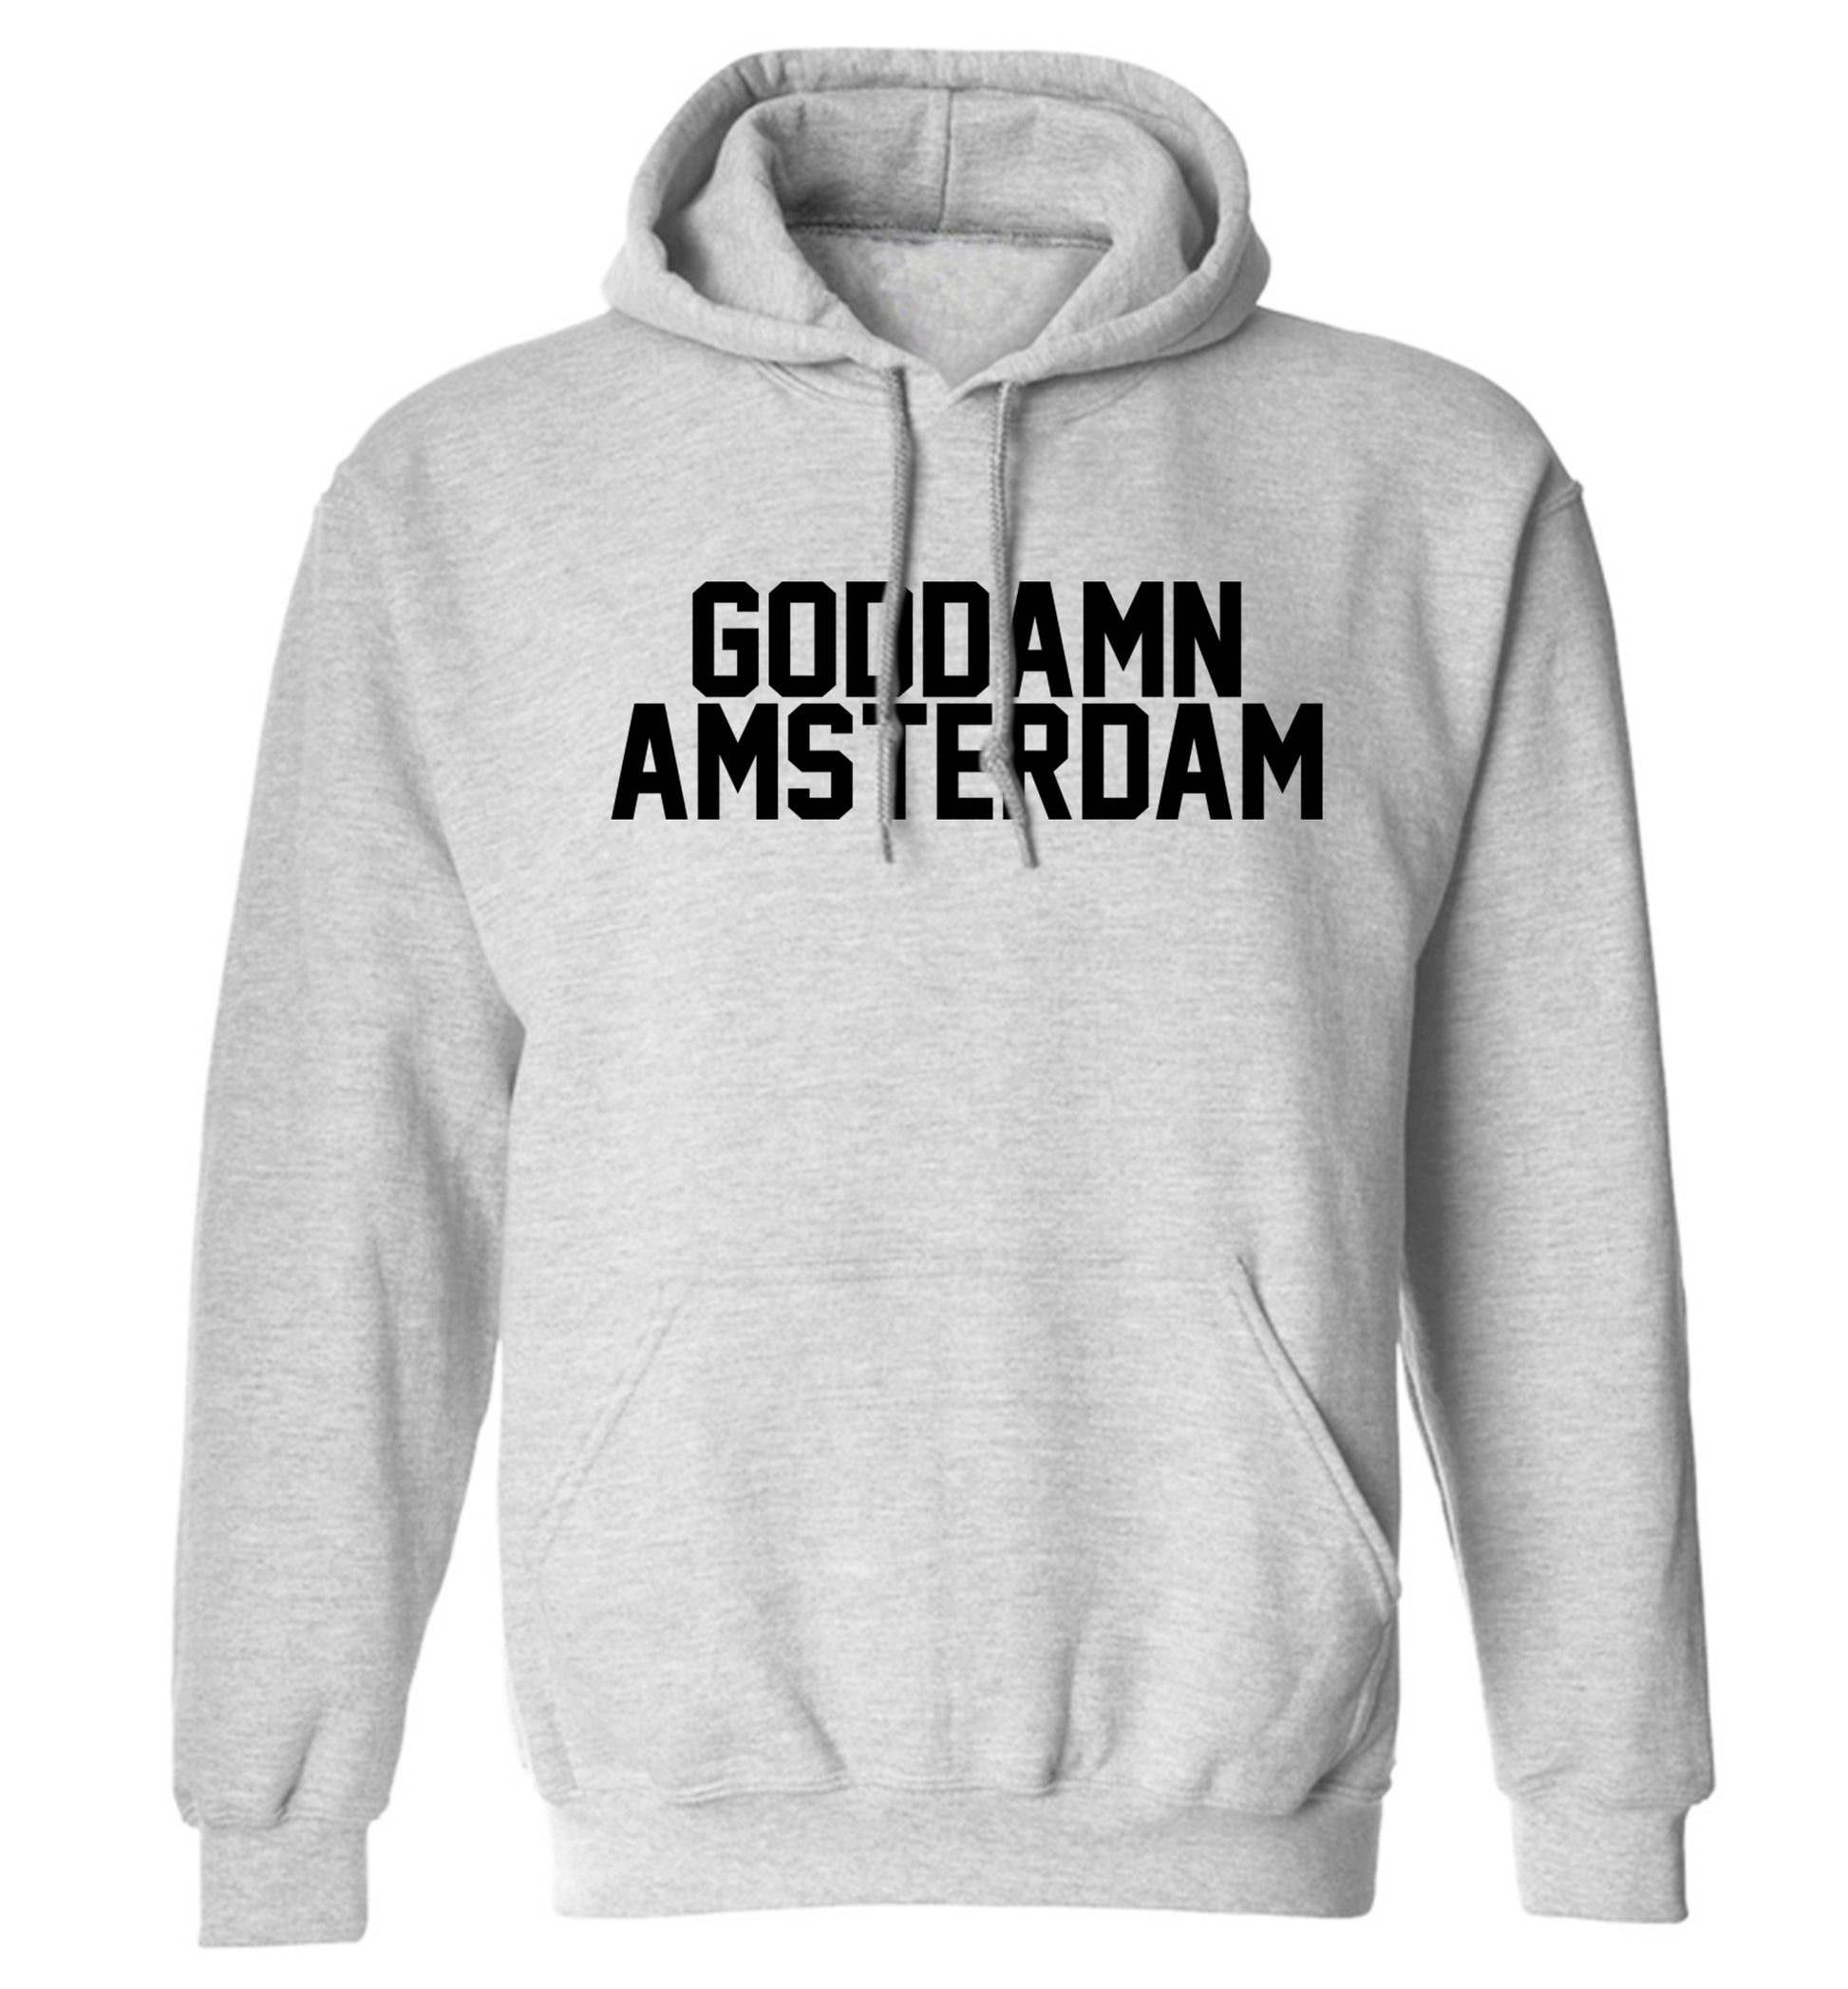 Goddamn Amsterdam adults unisex grey hoodie 2XL